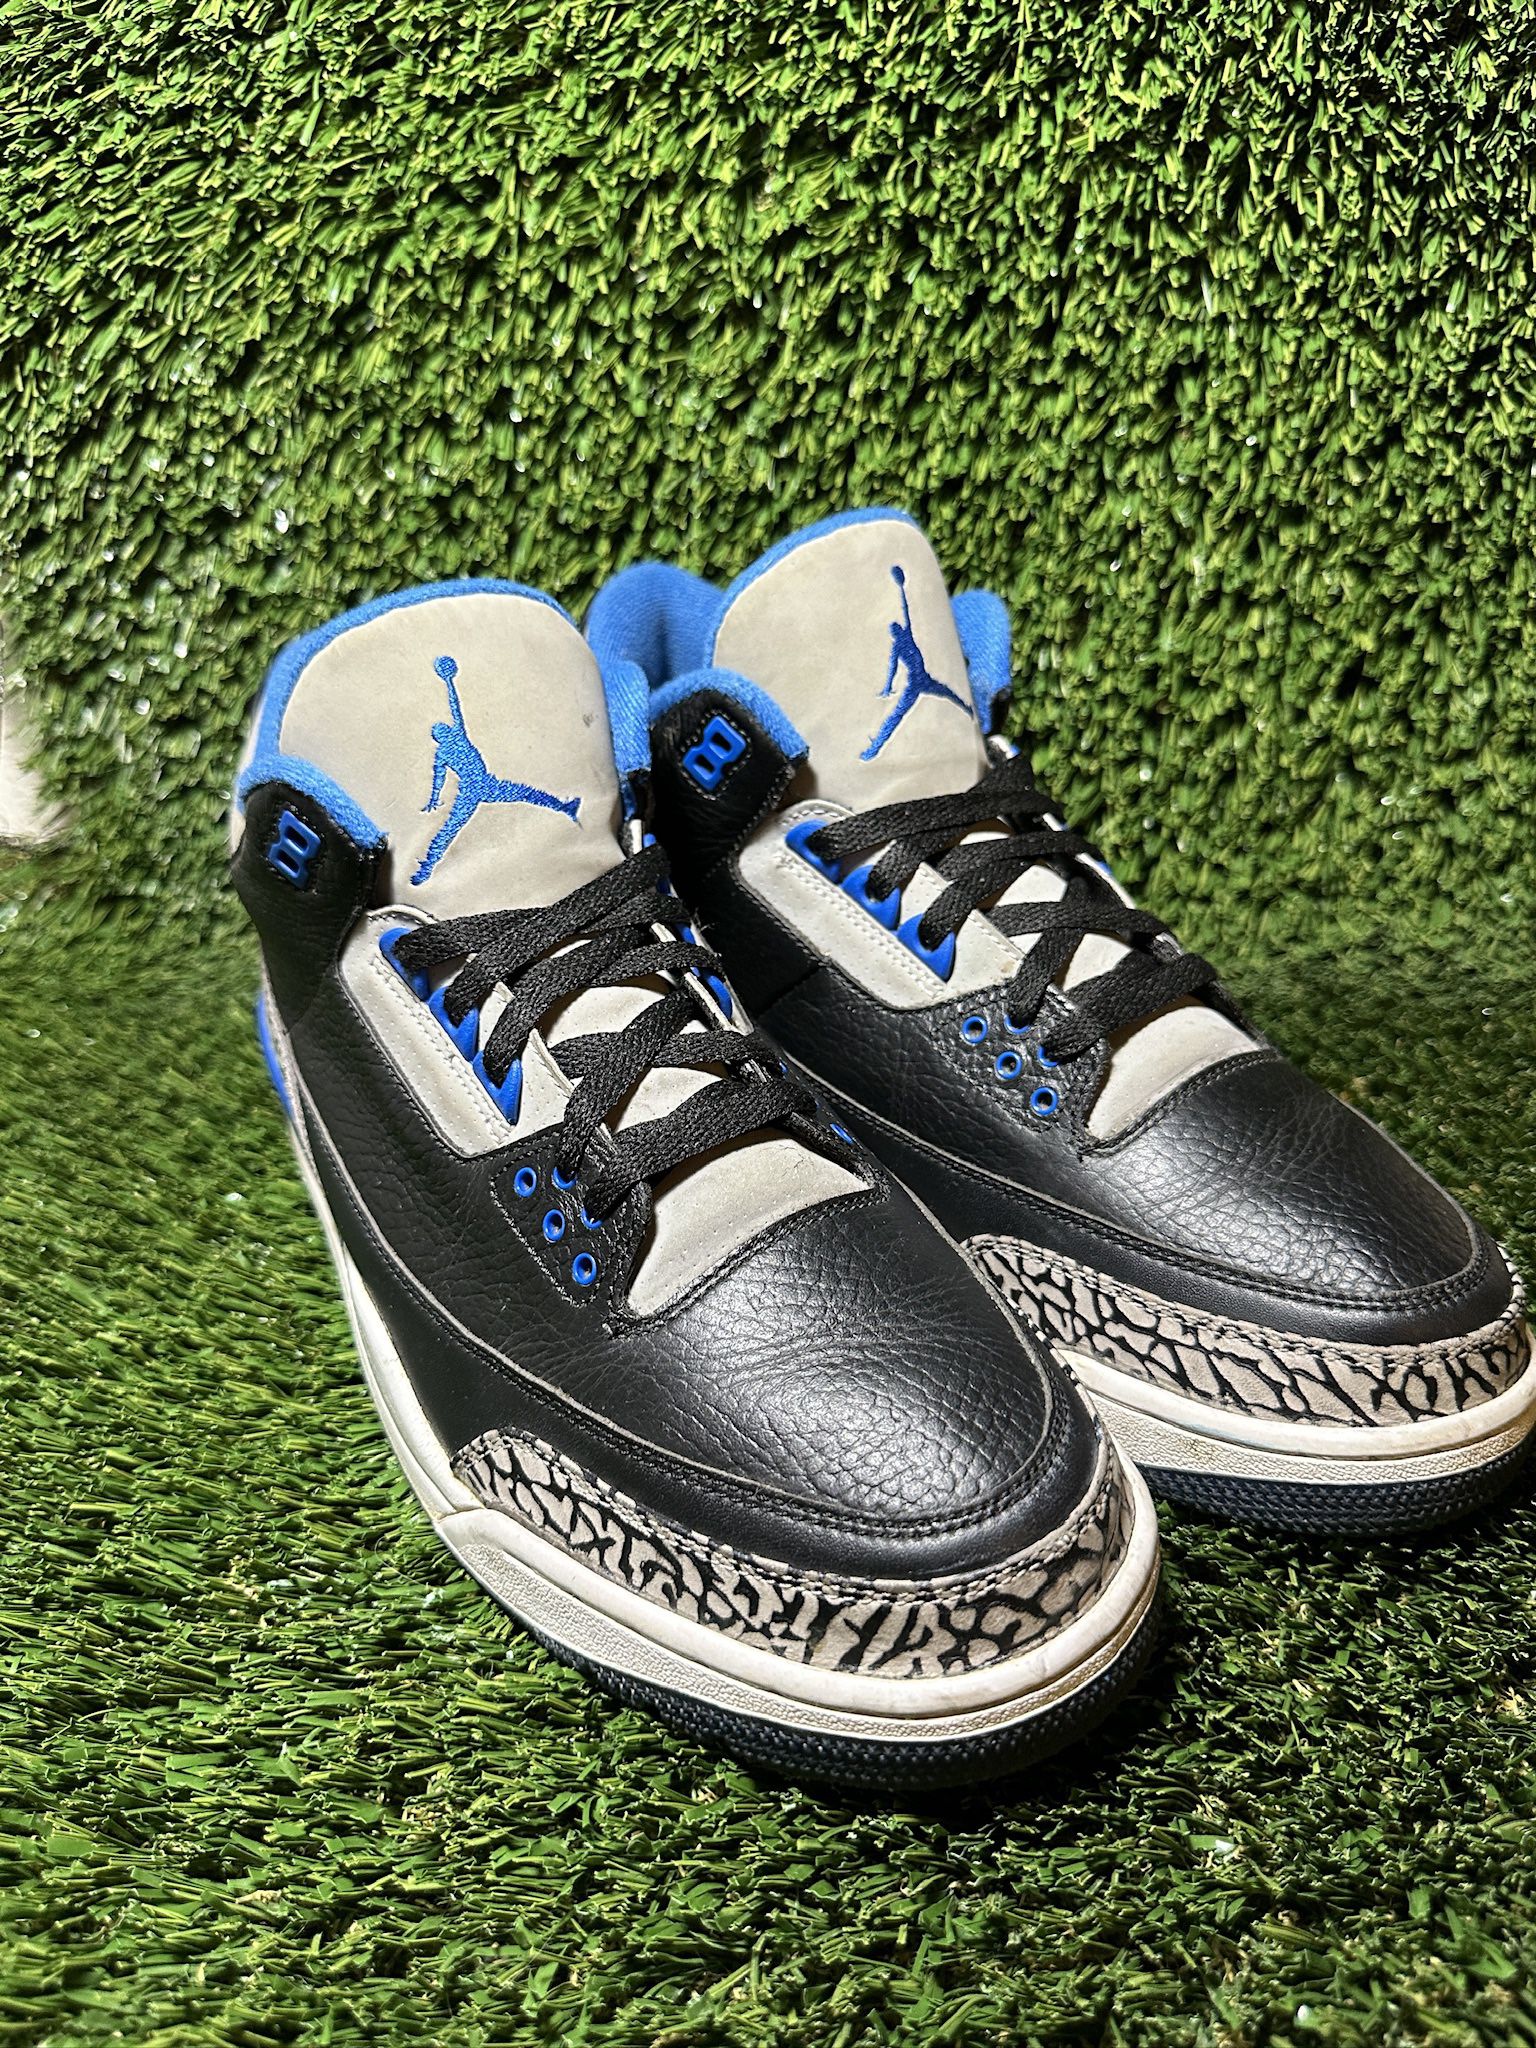 Nike Air Jordan 3 Sport Blue 2014 AJ3 136064-007 Men’s Size 11.5 No Box